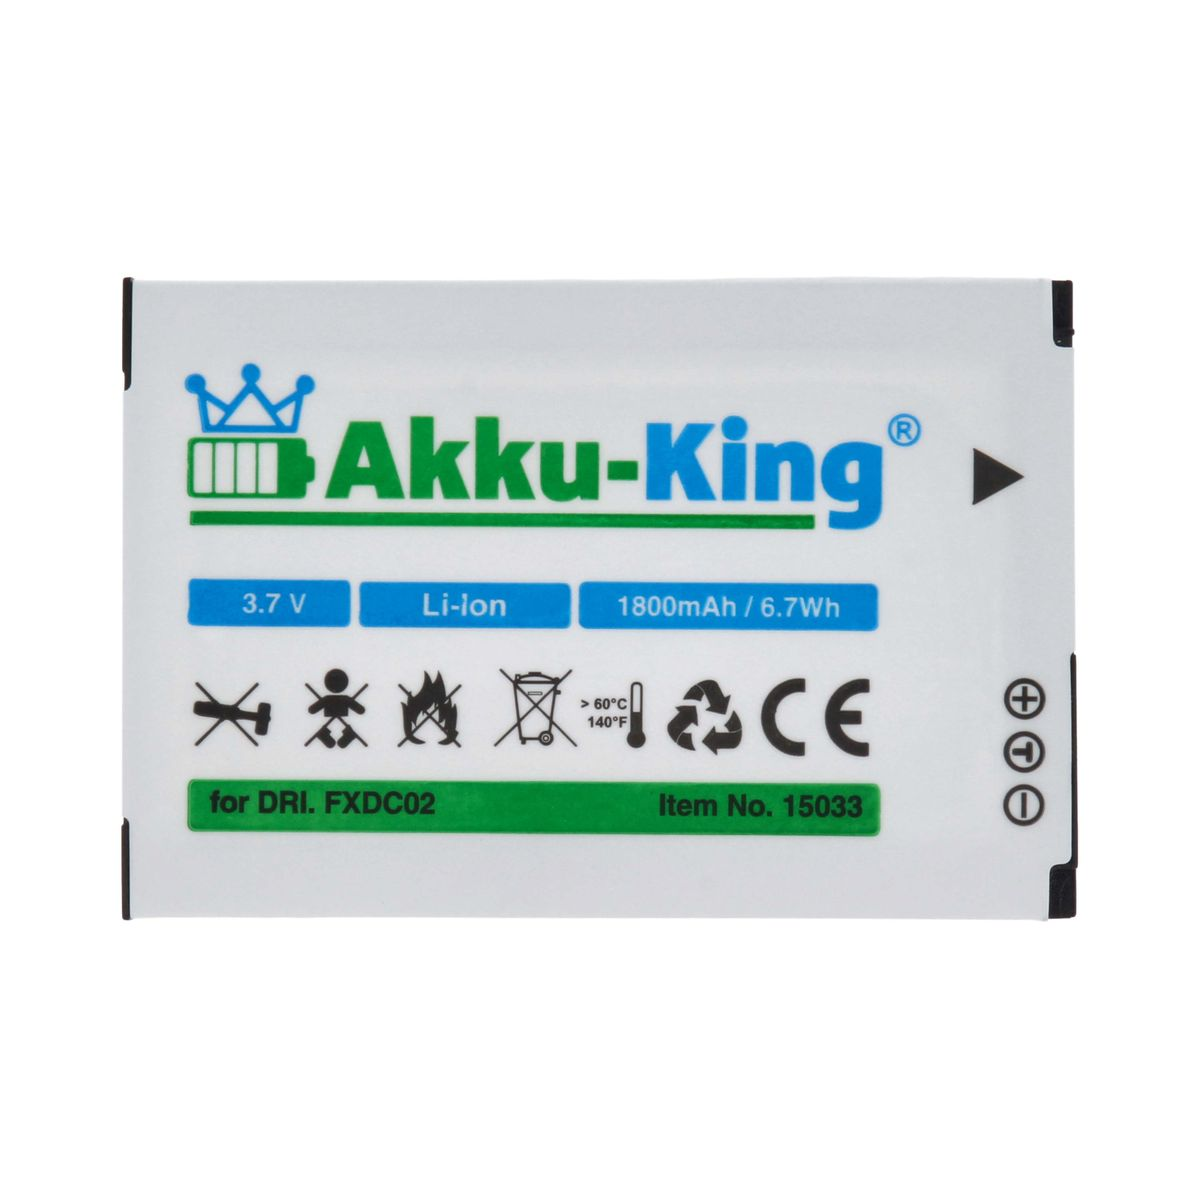 mit 1800mAh FXDC02 Kamera-Akku, Volt, AKKU-KING Drift Akku 3.7 kompatibel Li-Ion